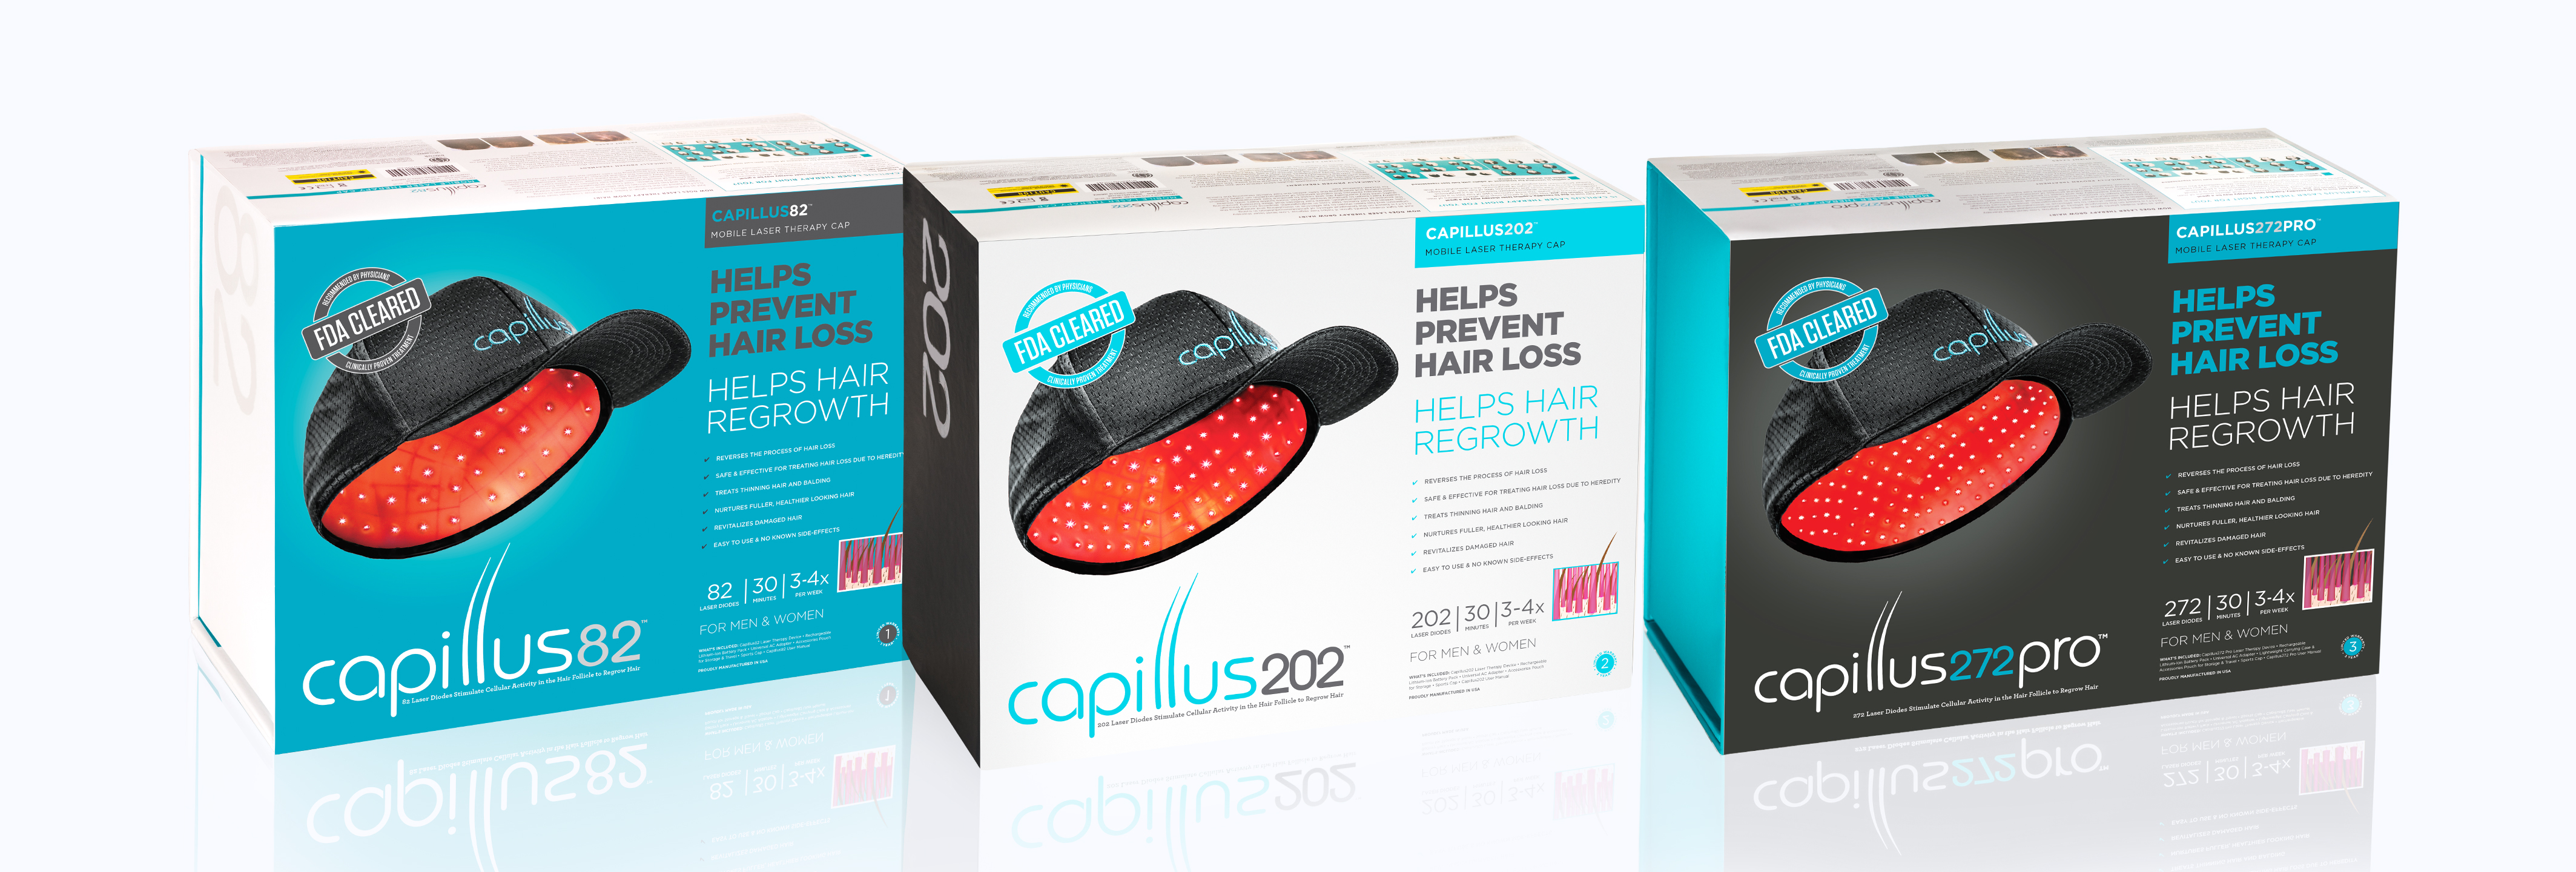 Capillus82™, Capillus202™ and Capillus272™ Pro